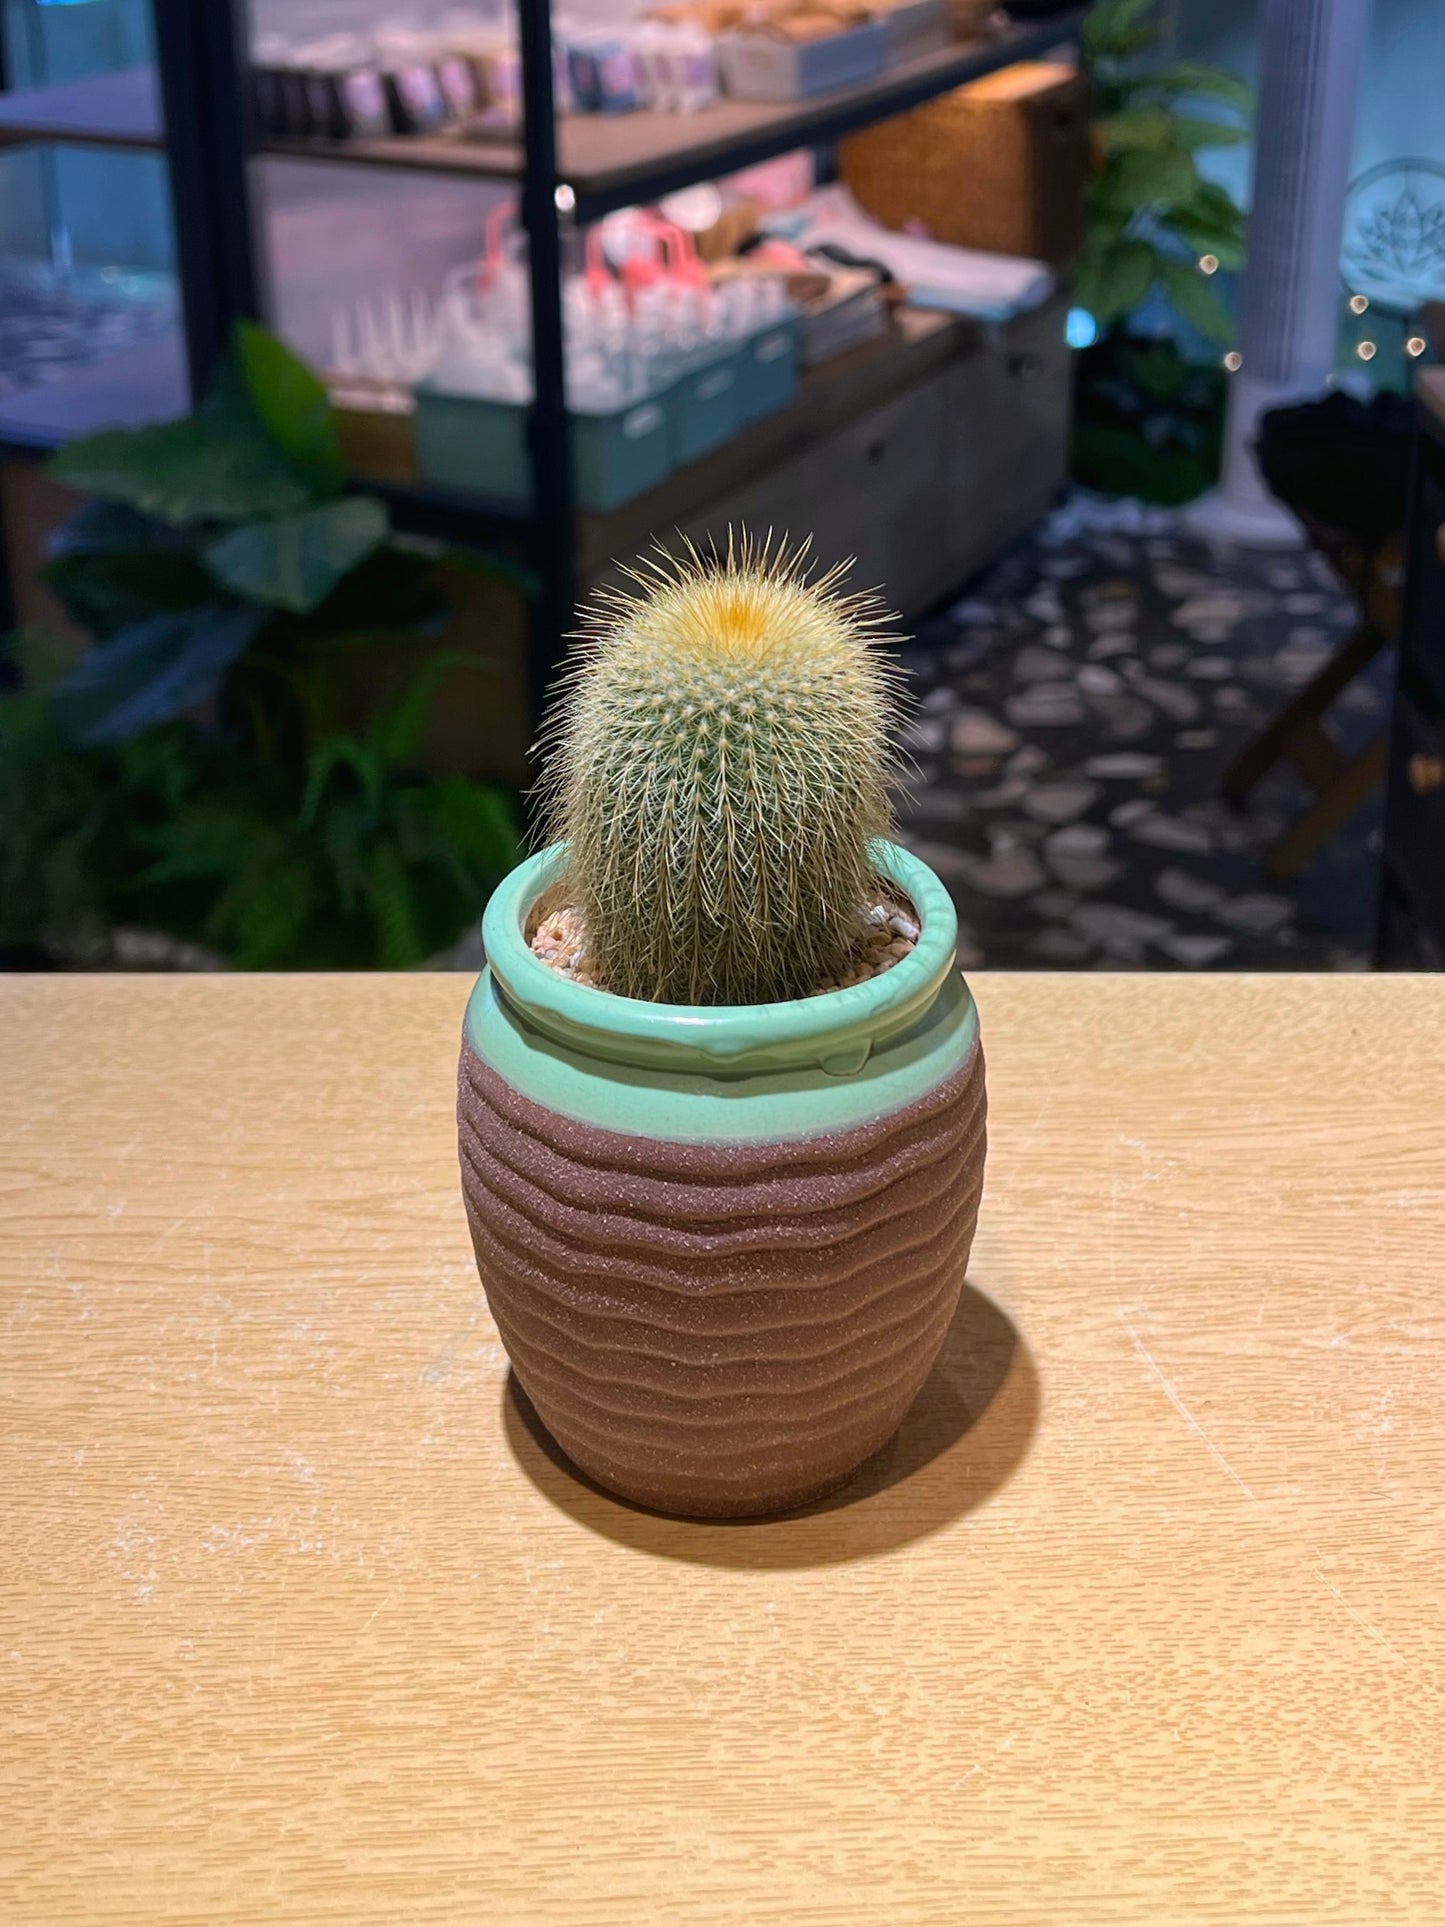 Golden Barrel Cactus in Textured Ceramic Pot